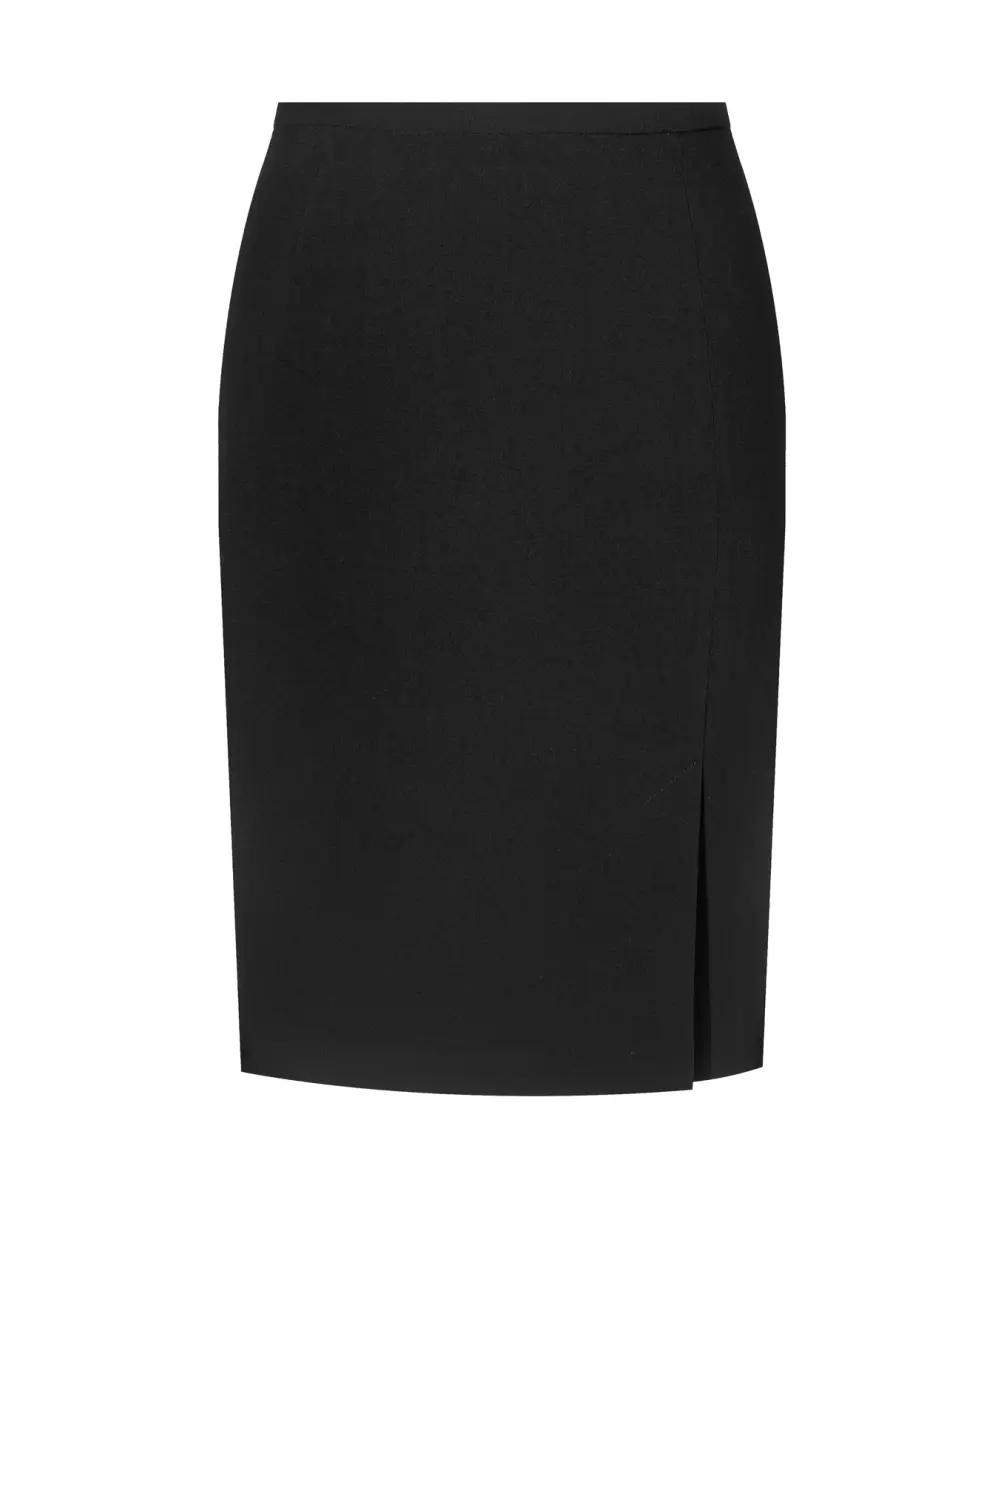 czarna spódnica z rozporkiem z przodu ołówkowa polska marka Vito Vergelis Moda Wrocław spódnica duże rozmiary